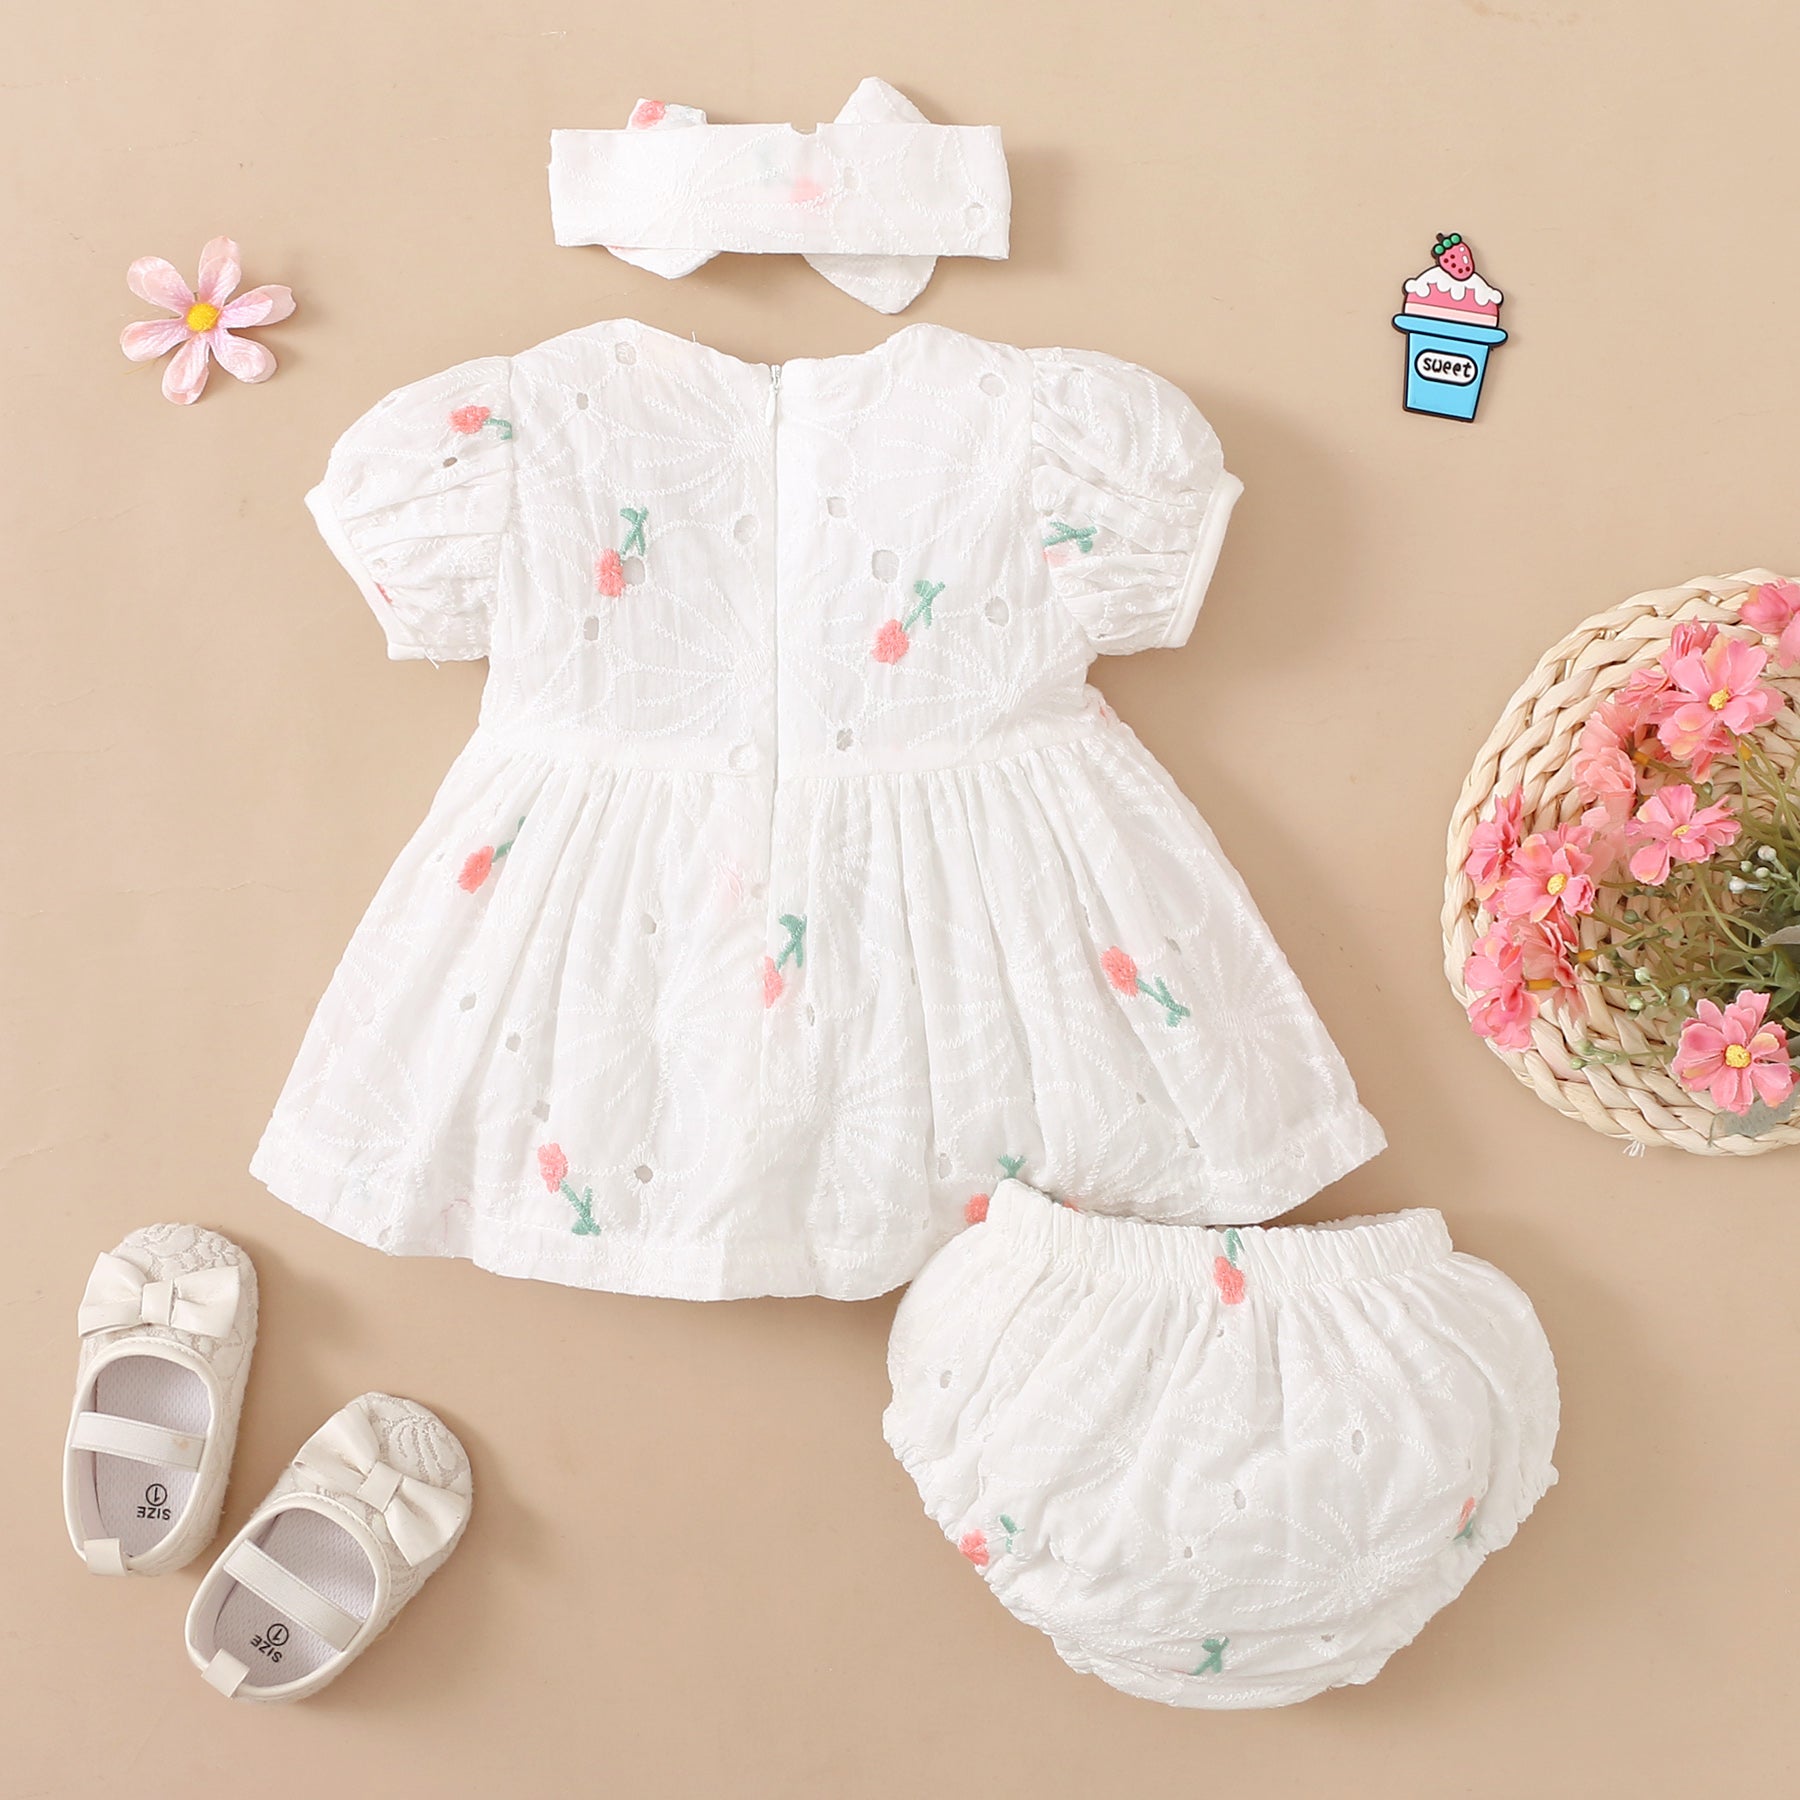 Conjunto de bebé con estampado floral encantador de 3 piezas